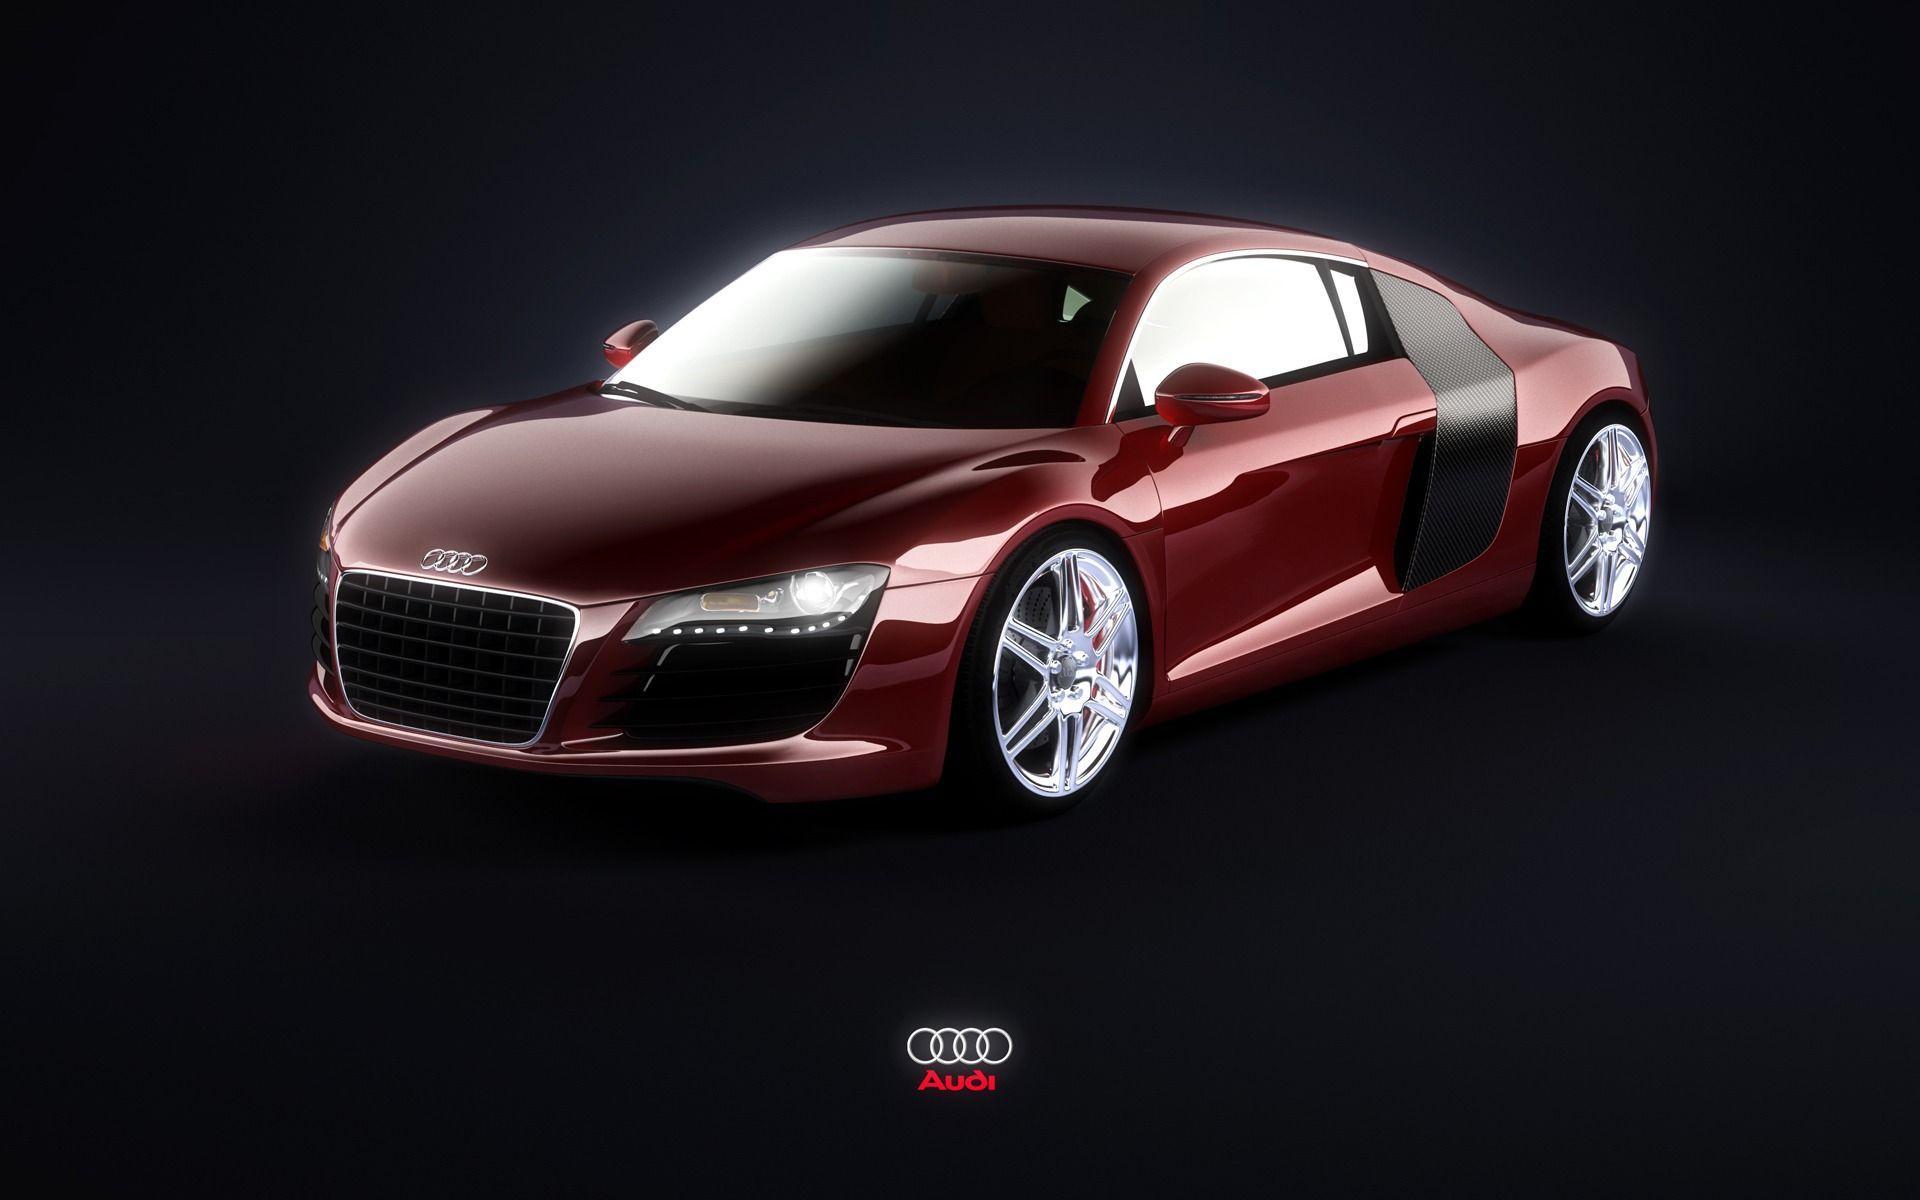 Red Audi R8 Wallpaper Audi Cars Wallpaper in jpg format for free